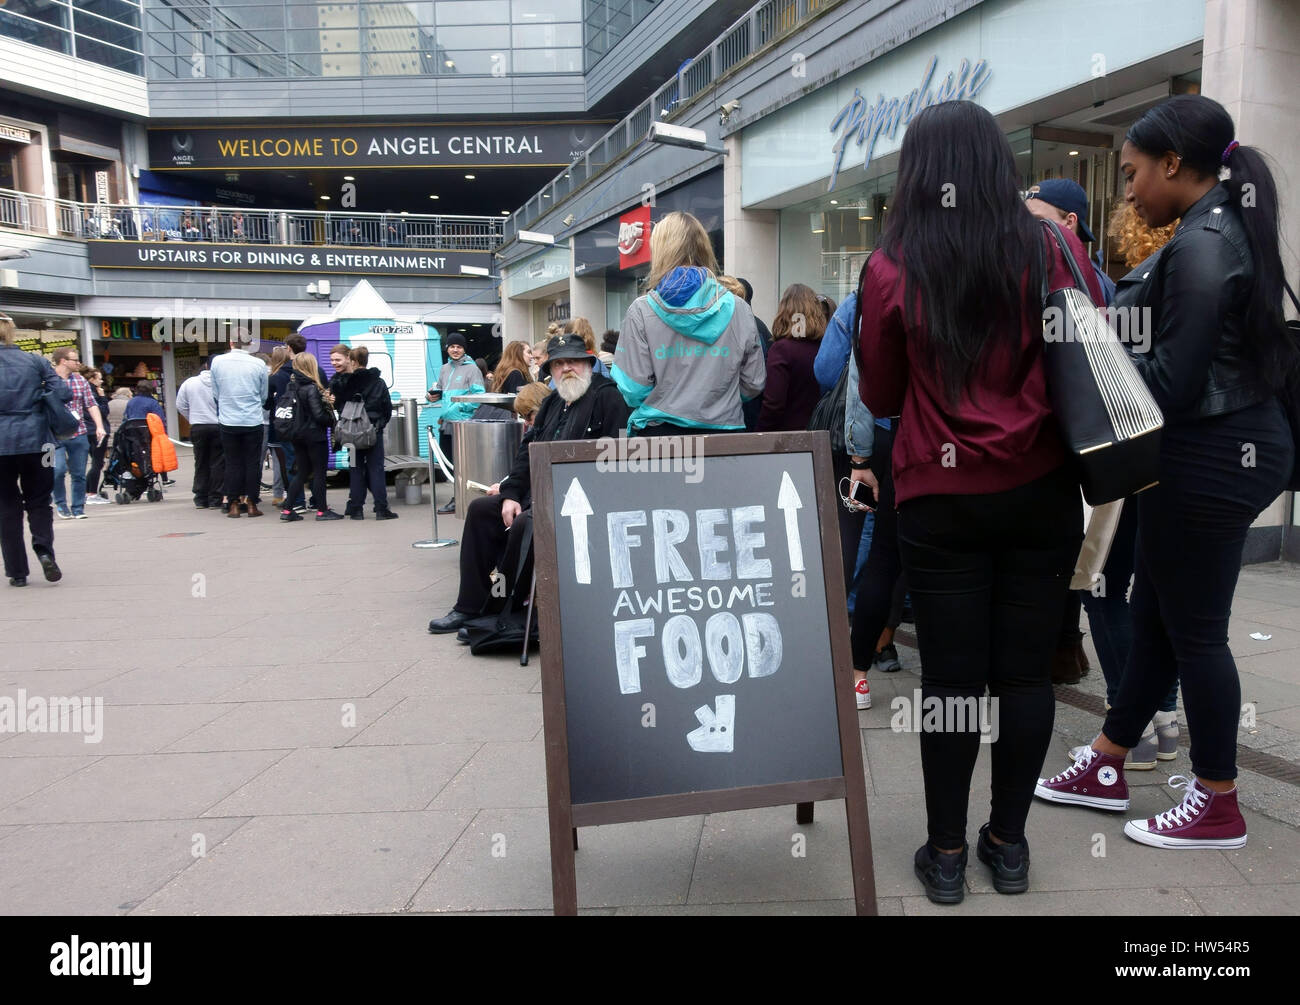 La gente in coda per cibo gratis in promozione Deliveroo nel nord di Londra Centro shopping Foto Stock